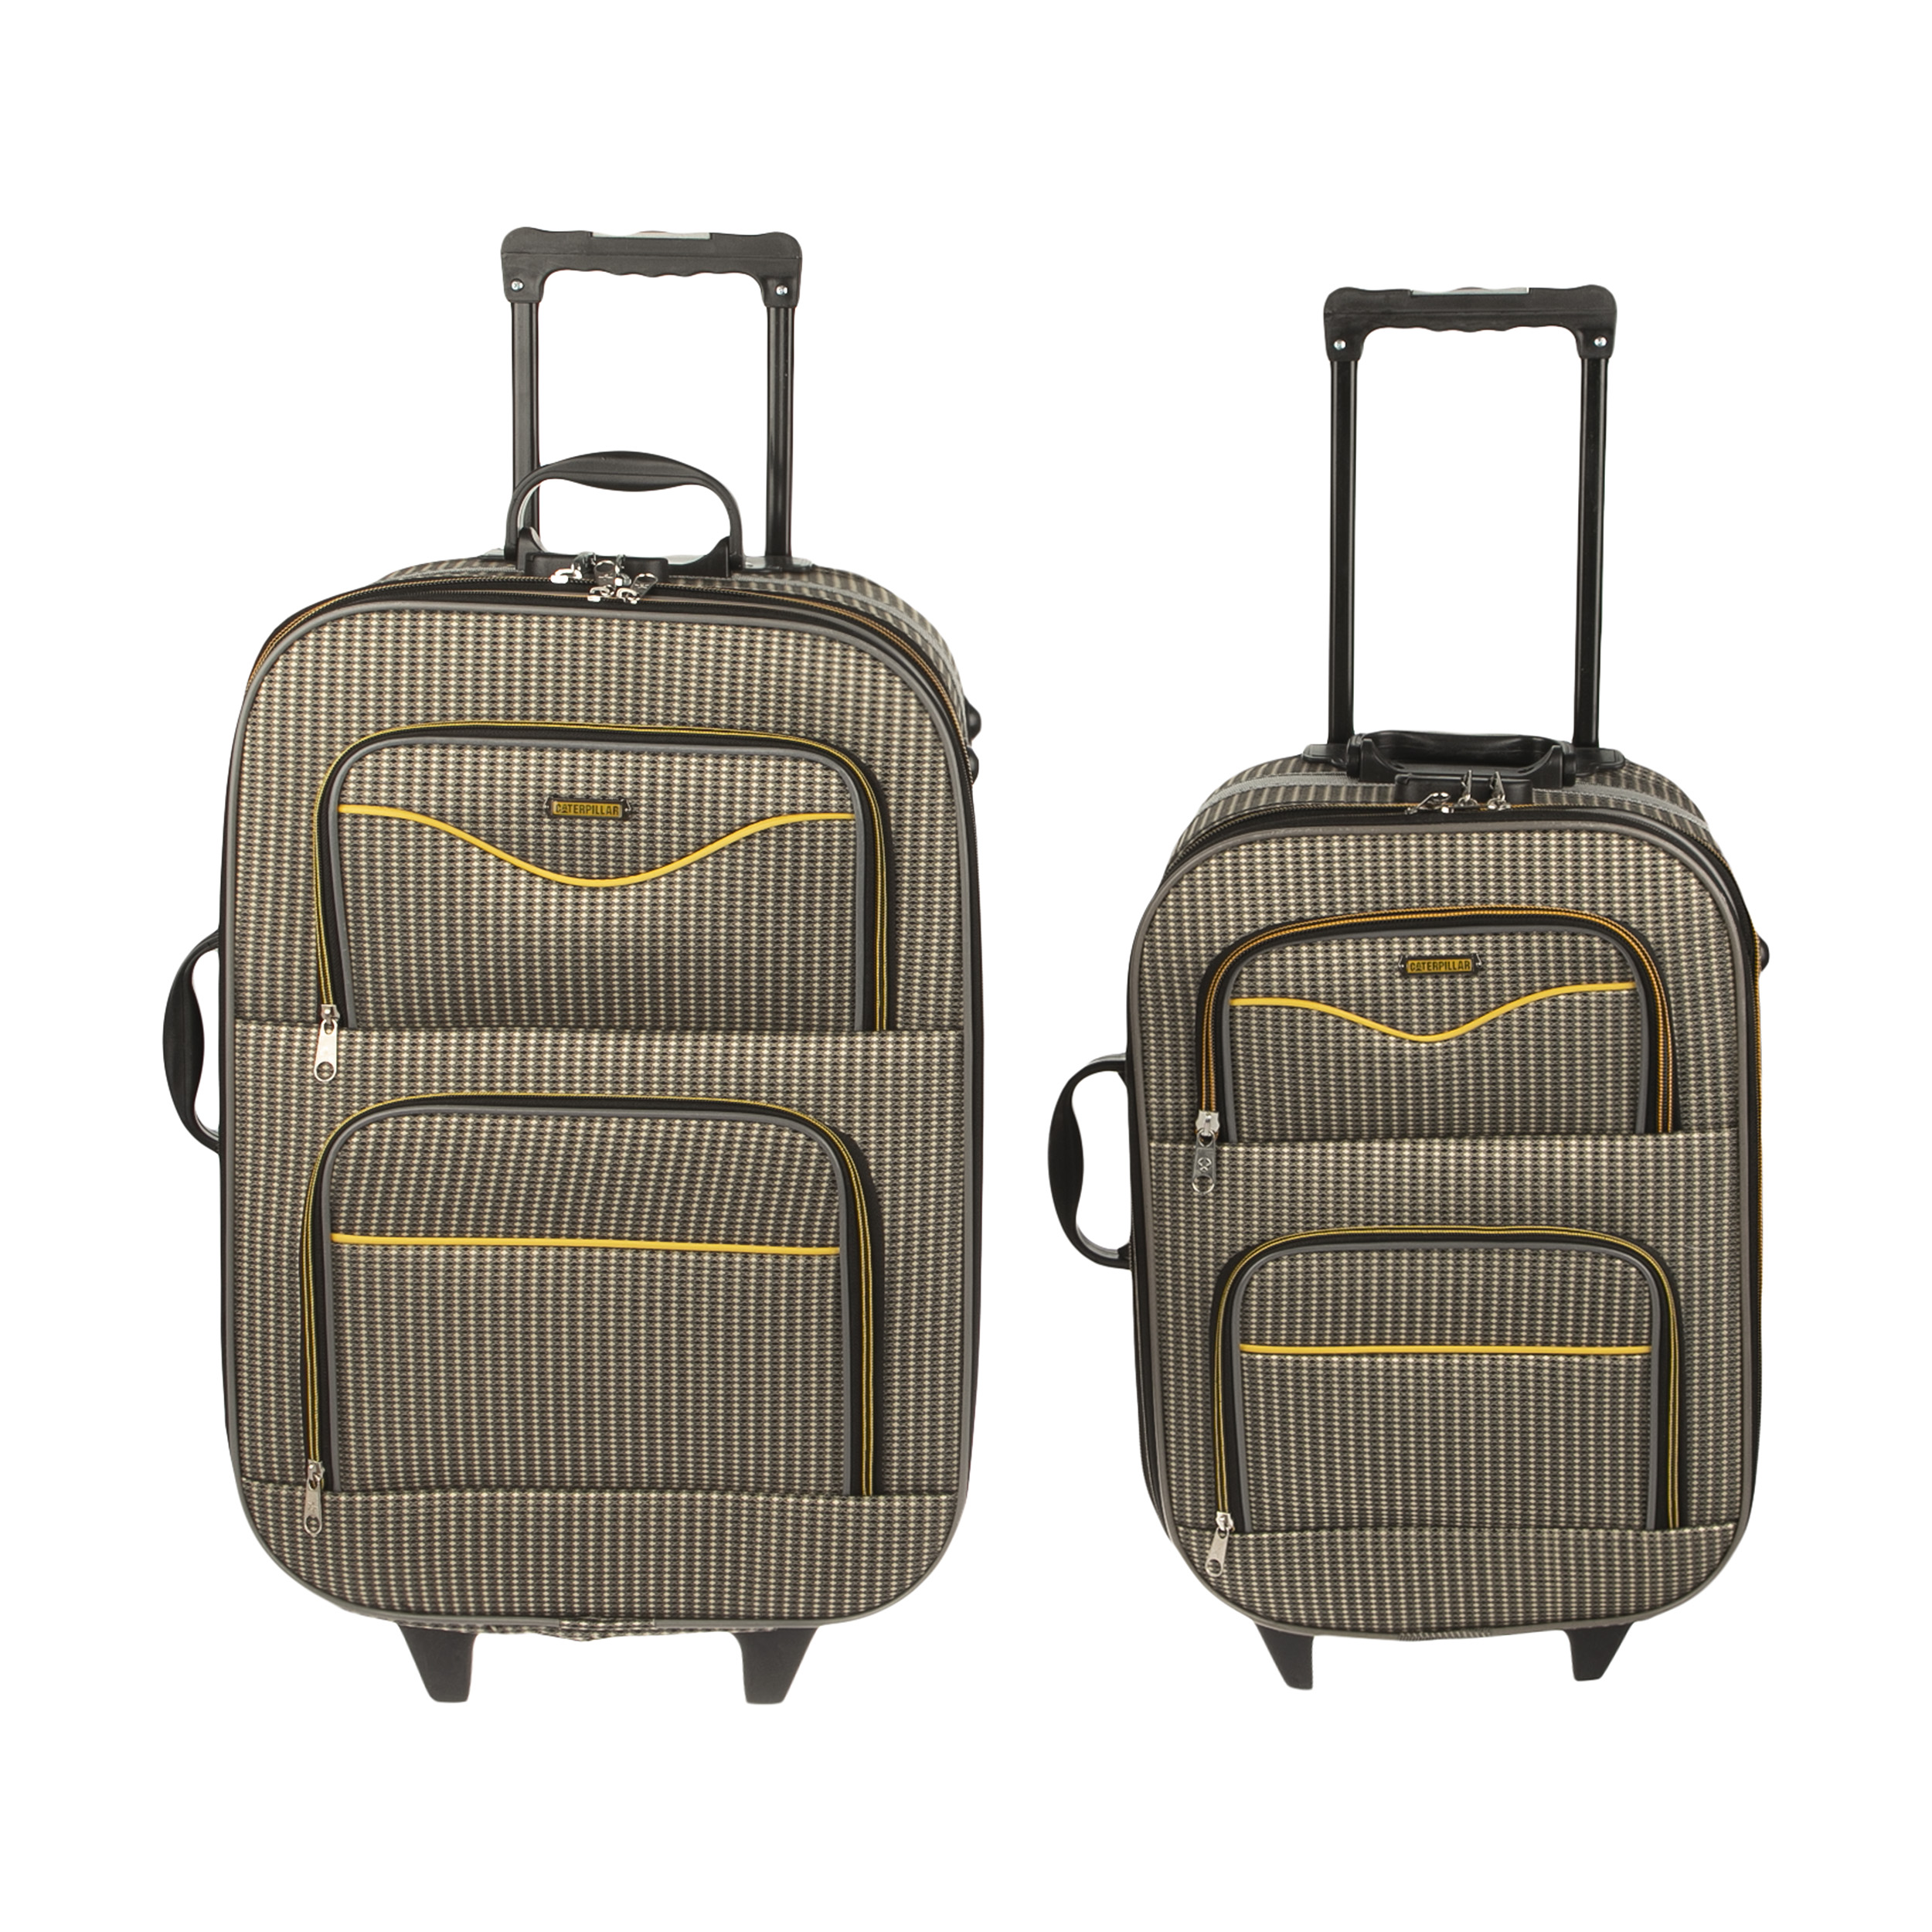 مجموعه دو عددی چمدان مدل H09